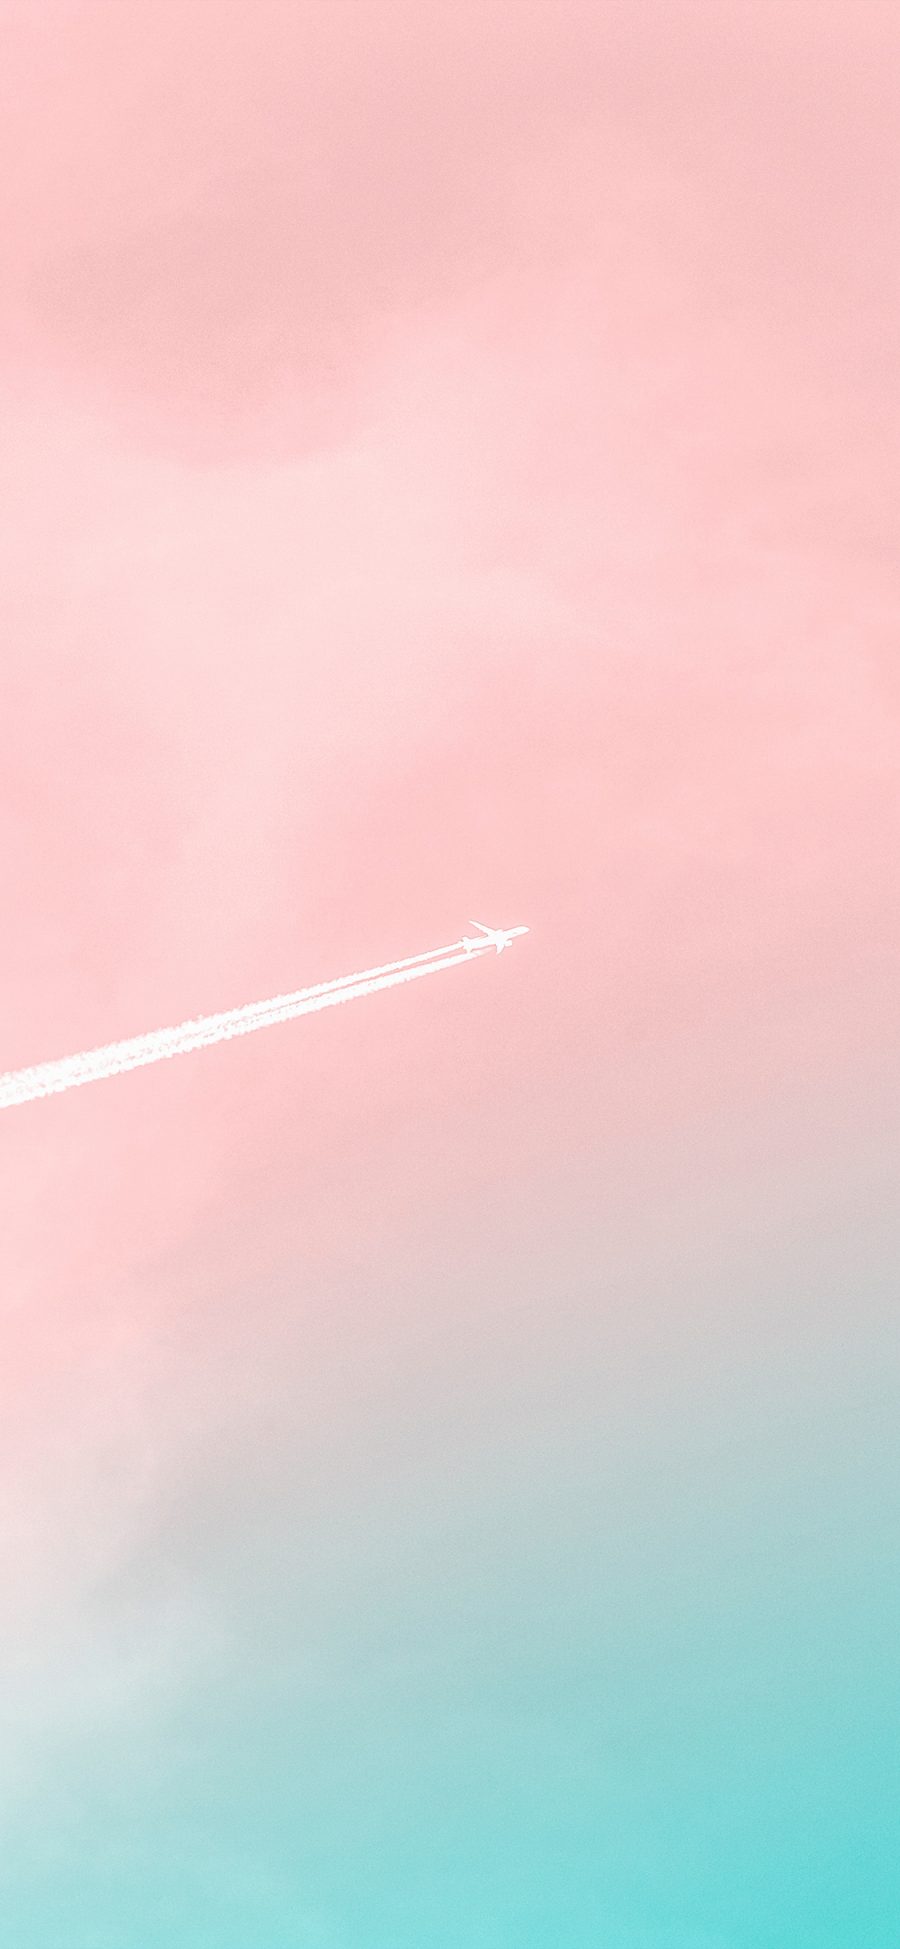 [2436×1125]天空 唯美 飞机 喷雾 苹果手机壁纸图片